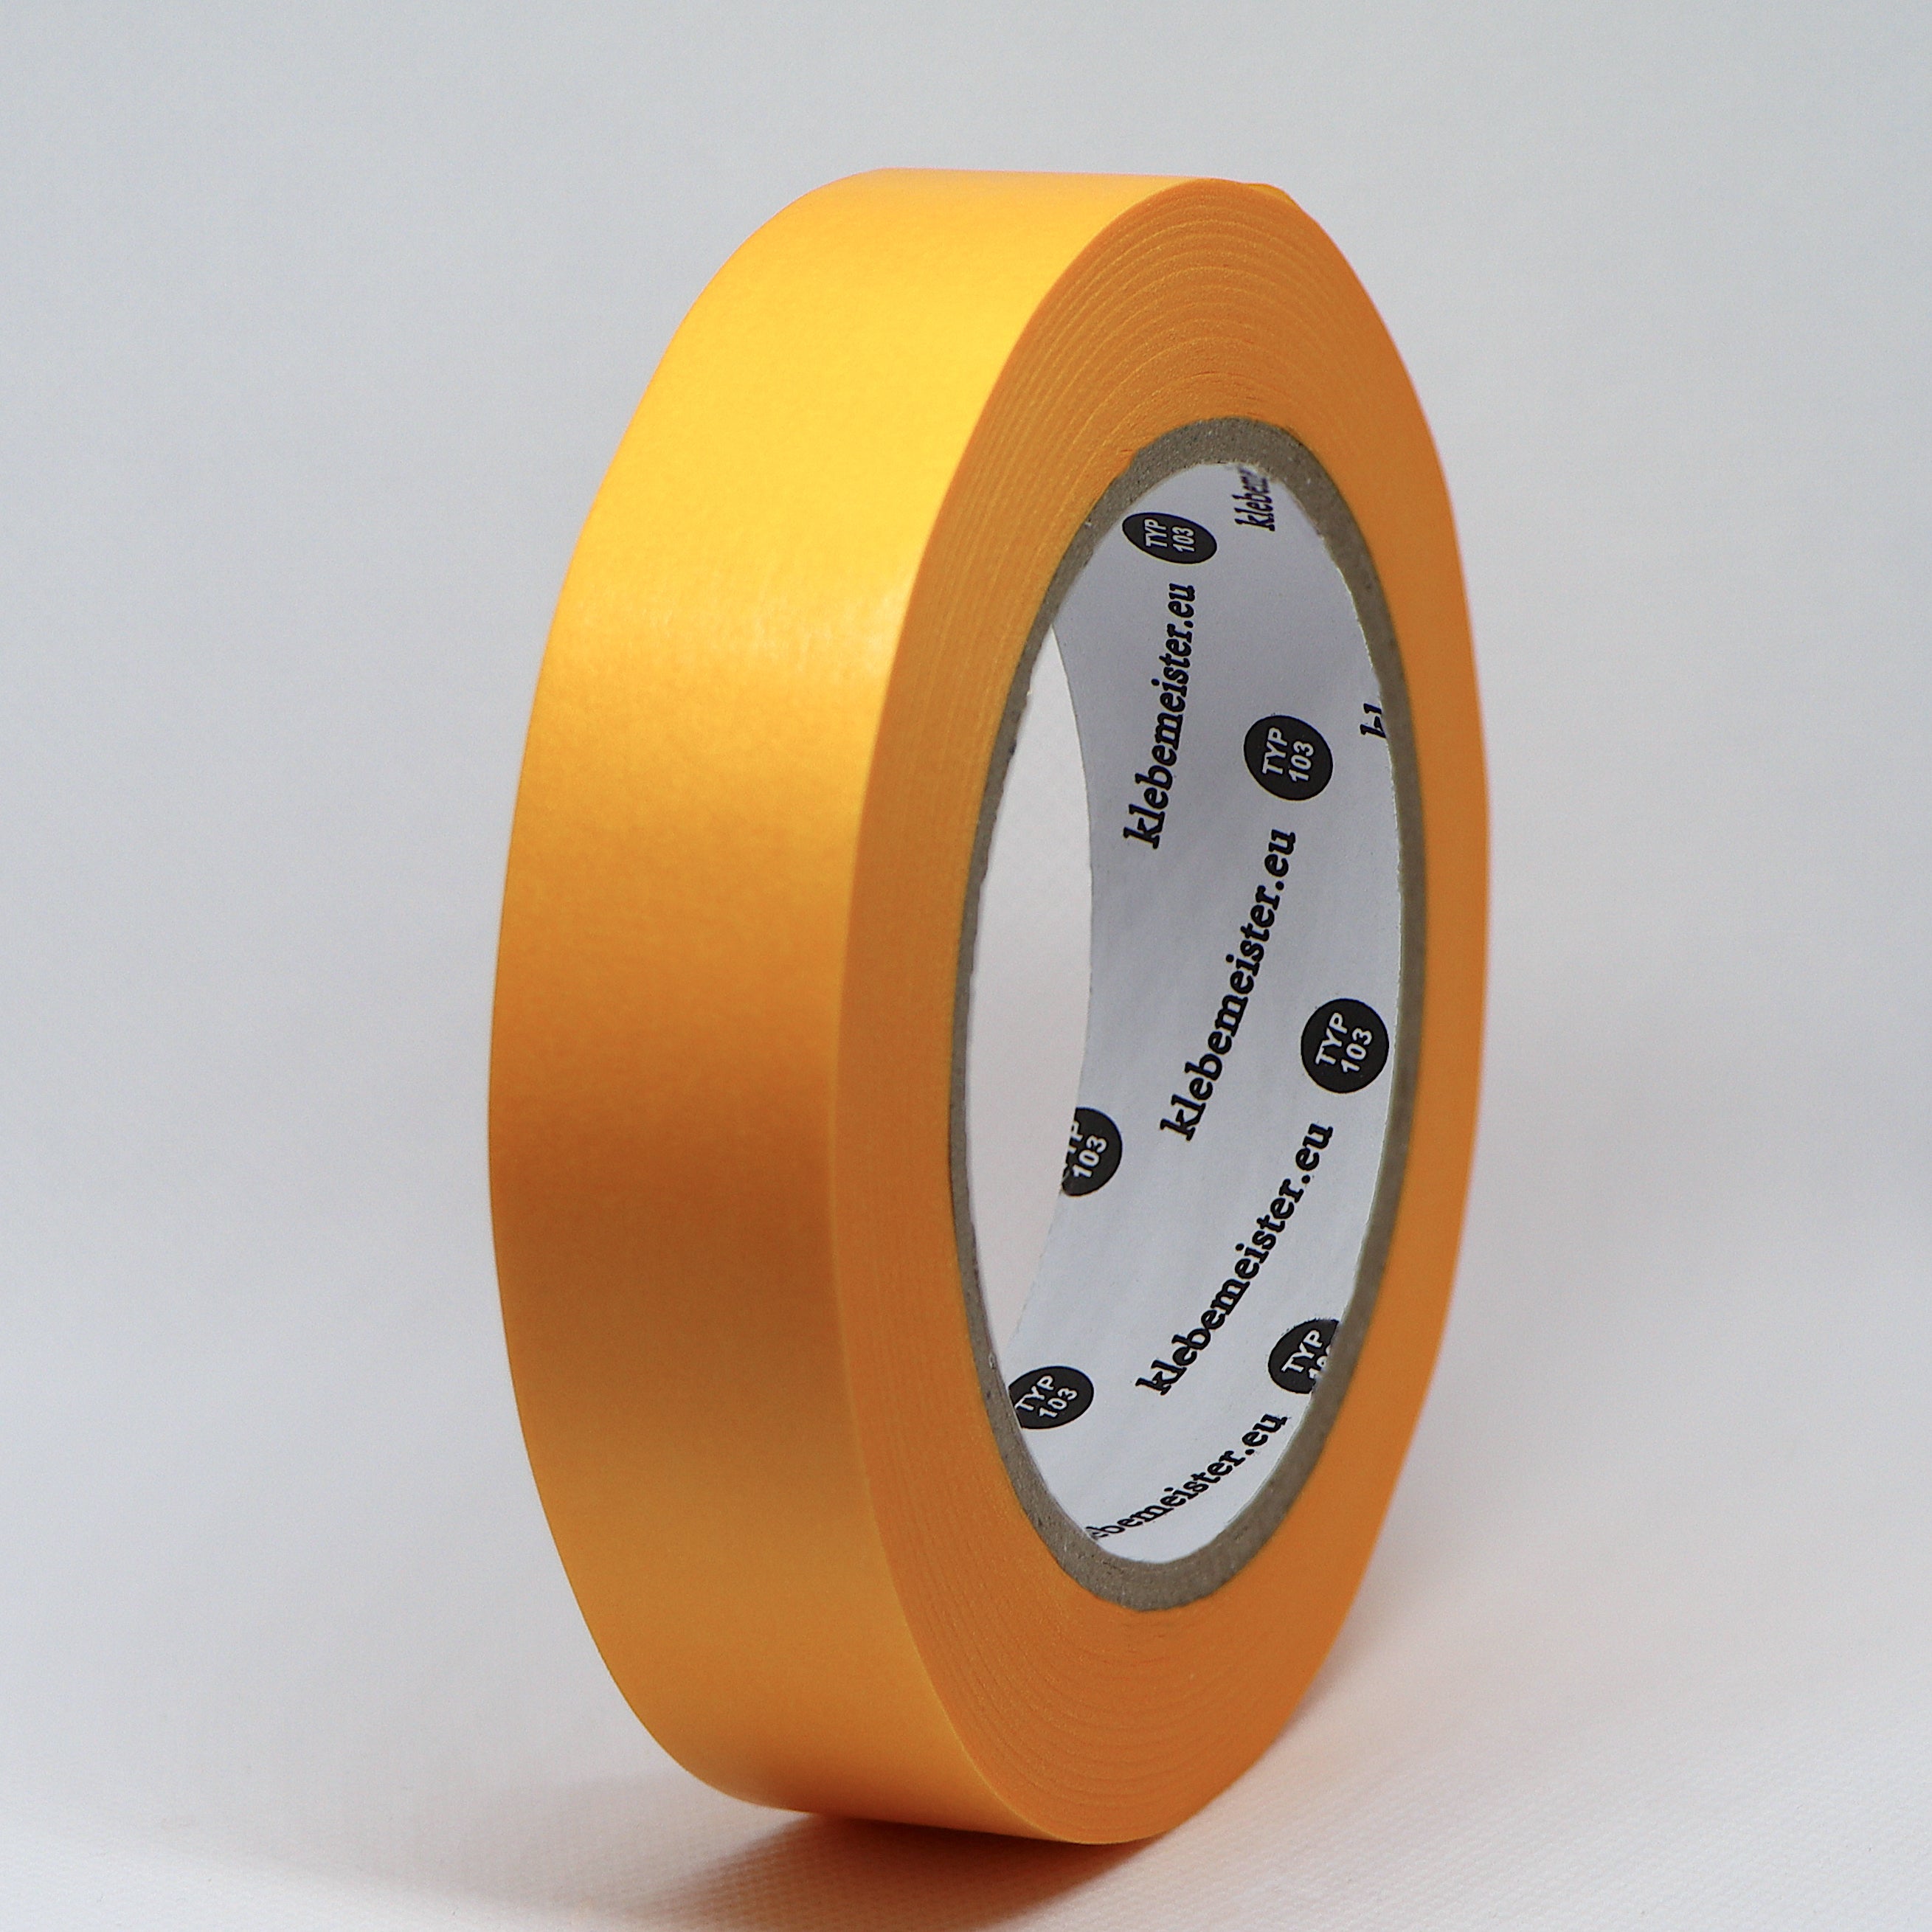  Profi Goldband Washi Tape UV 90 Klebeband 50m 25 mm  breite